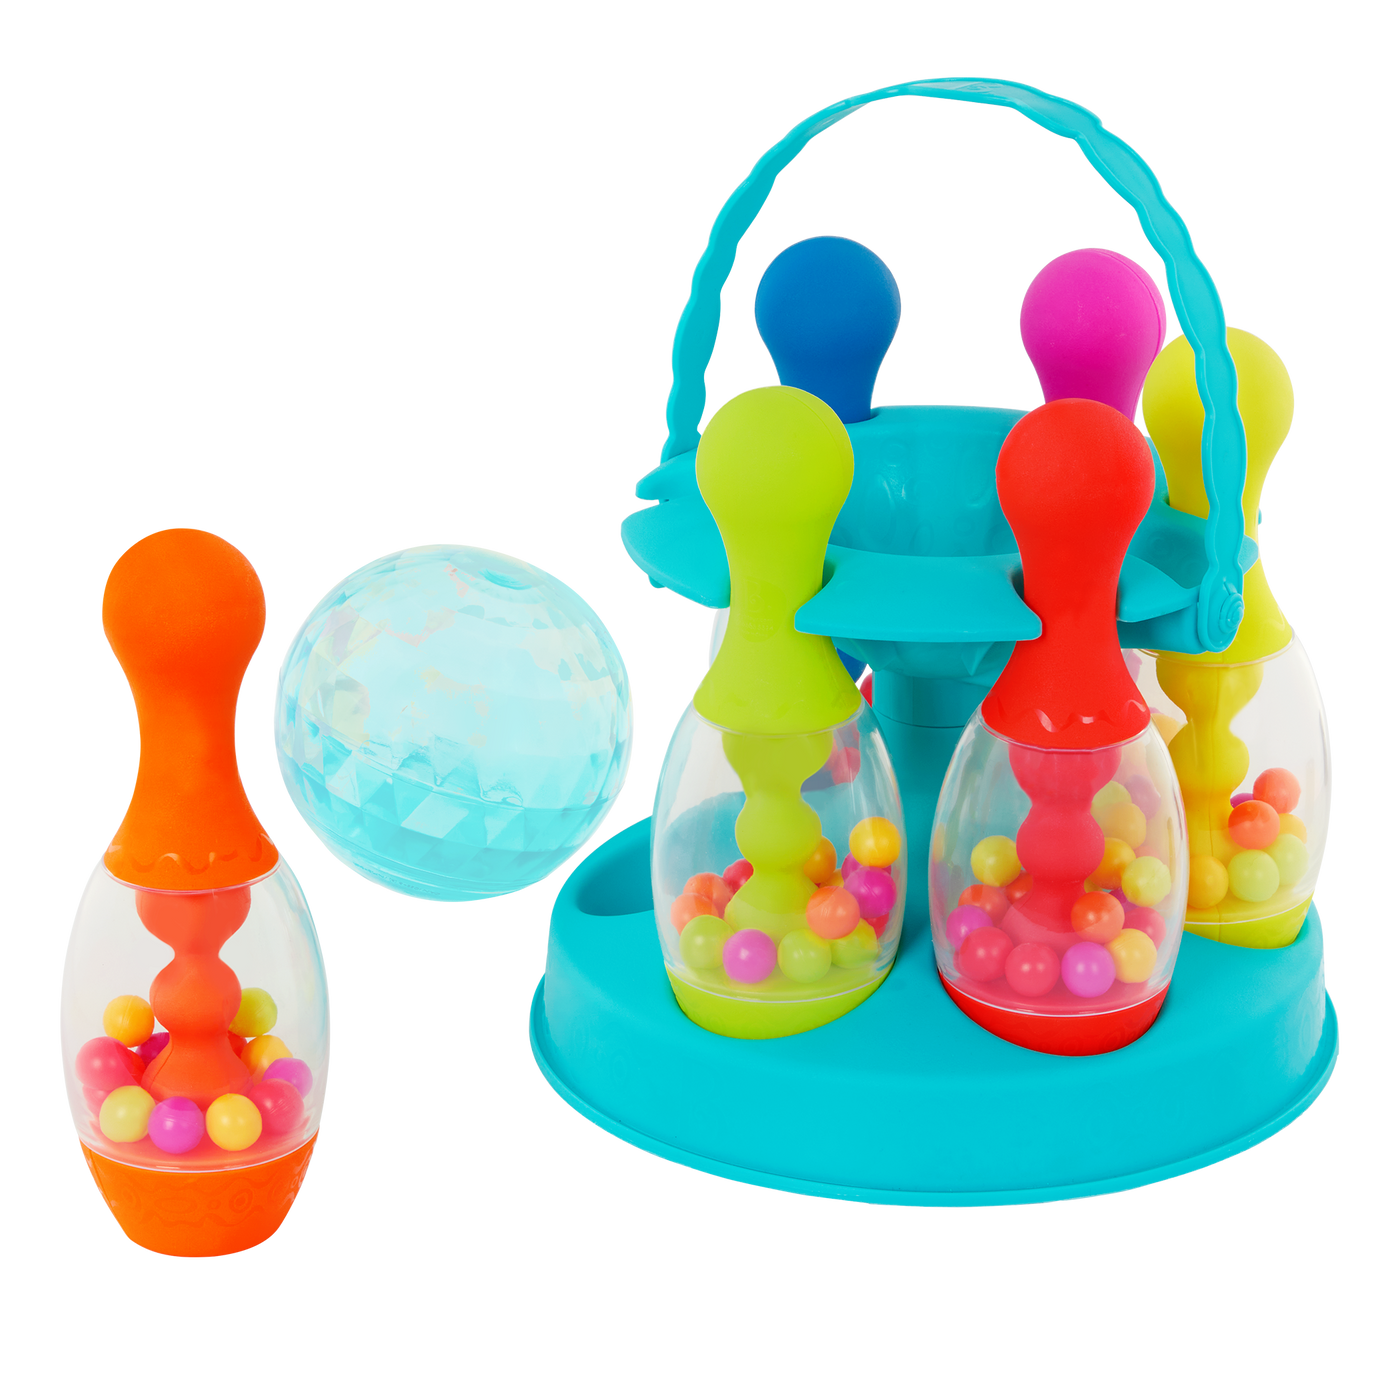 Toy bowling set.